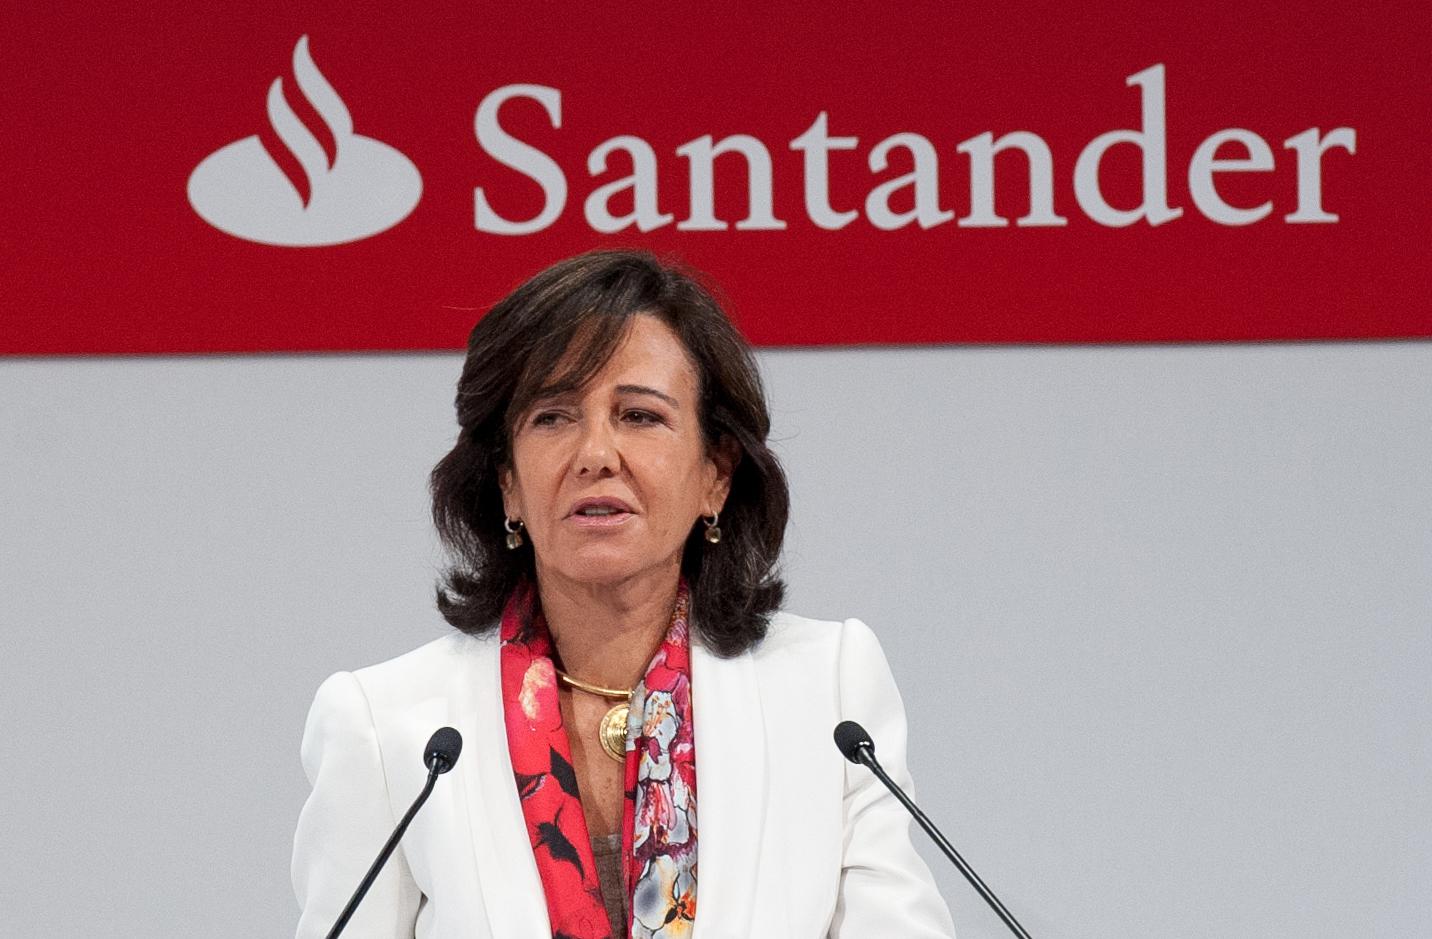 Santander compró Popular por el simbólico precio de un euro / Foto: Santander